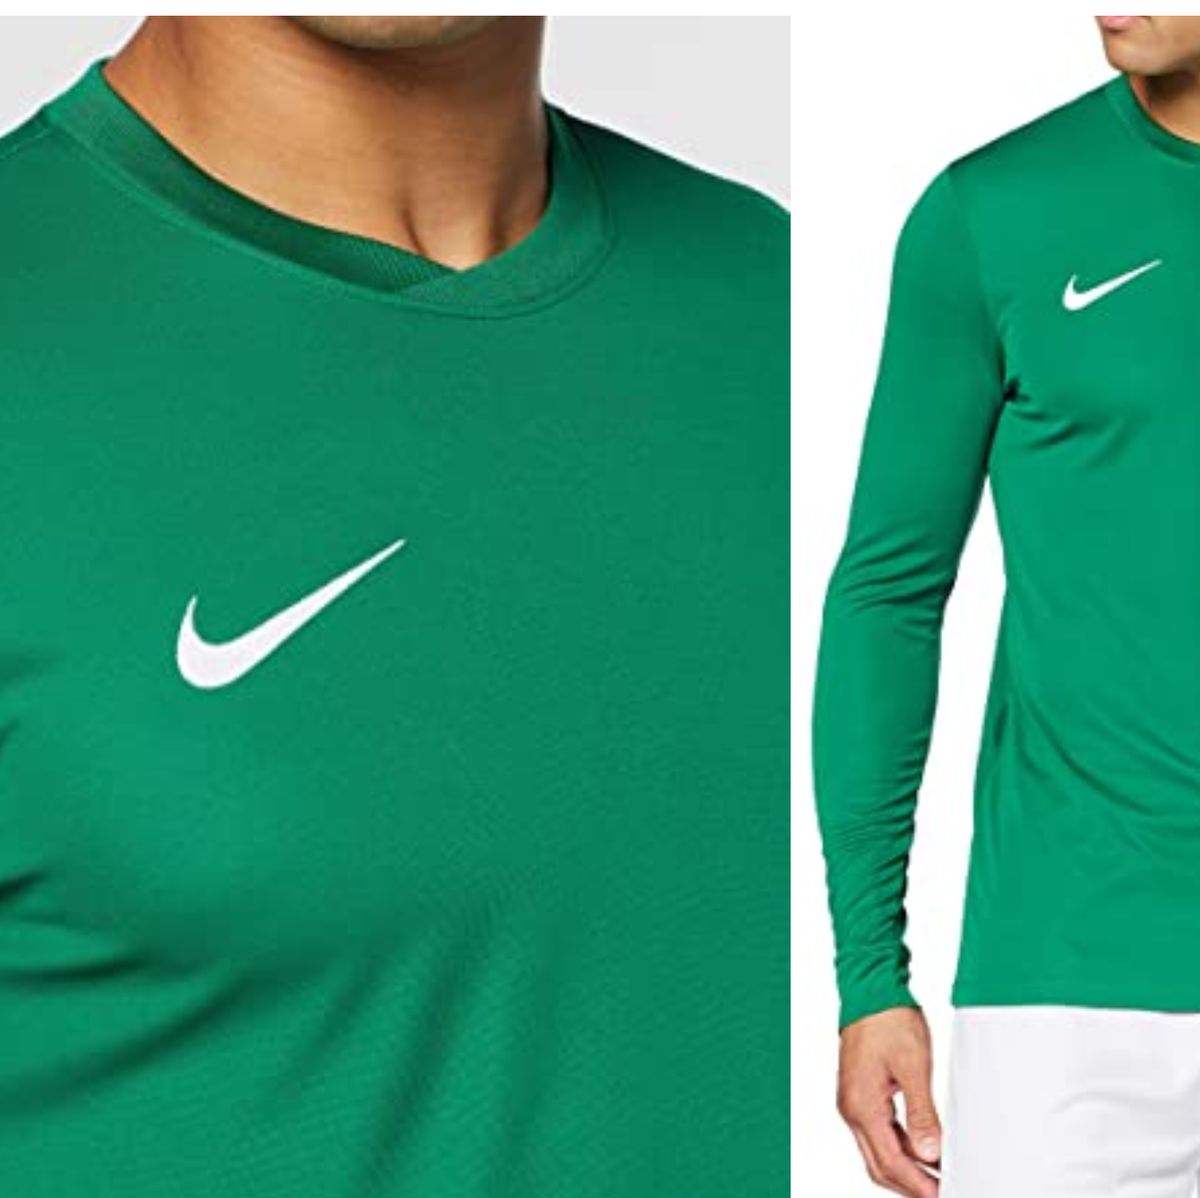 Nike triunfa con esta camiseta de manga larga de deporte